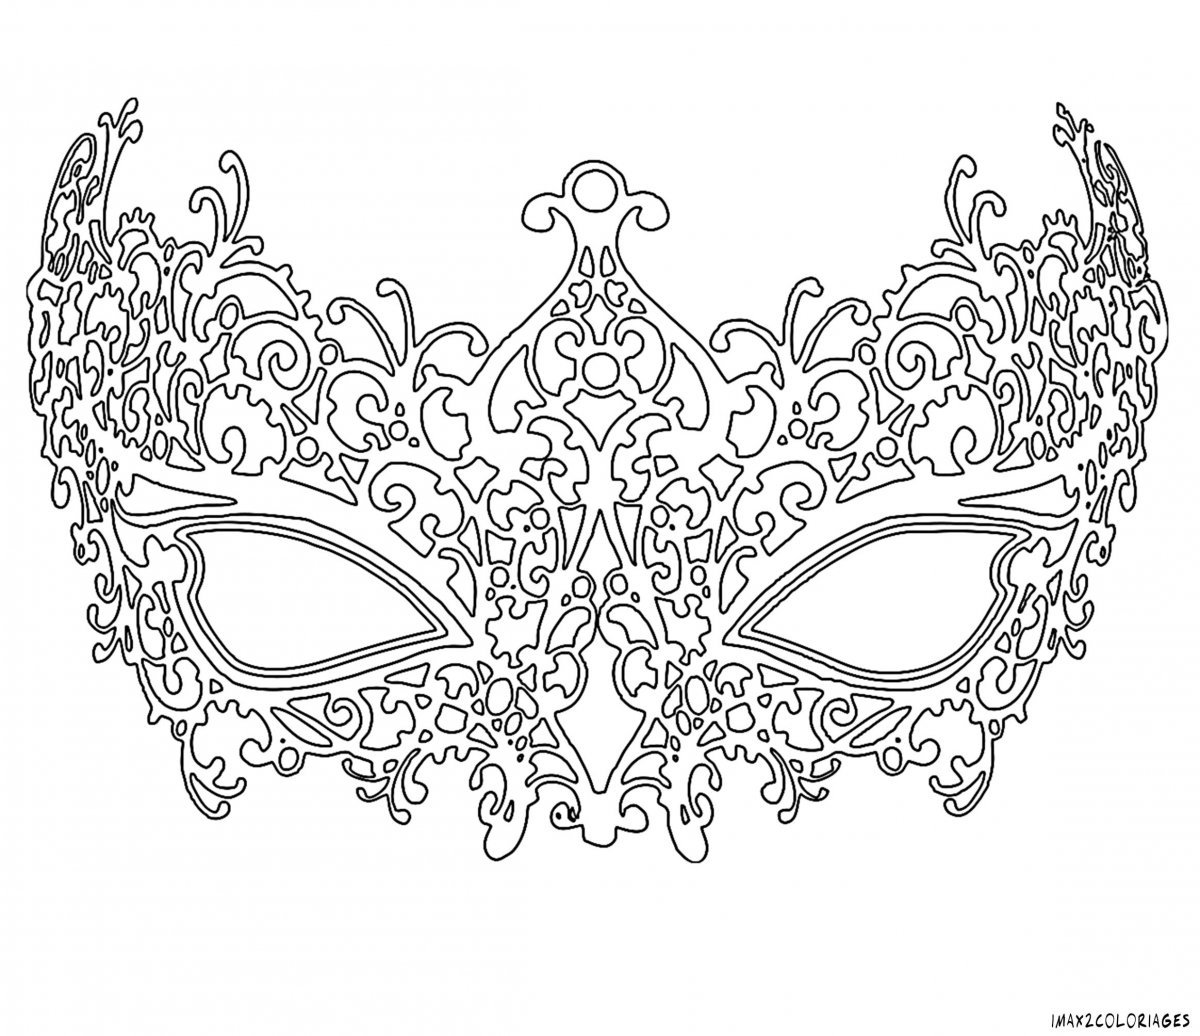 Шаблоны бумажных карнавальных масок. Карнавальная маска «Бабочка